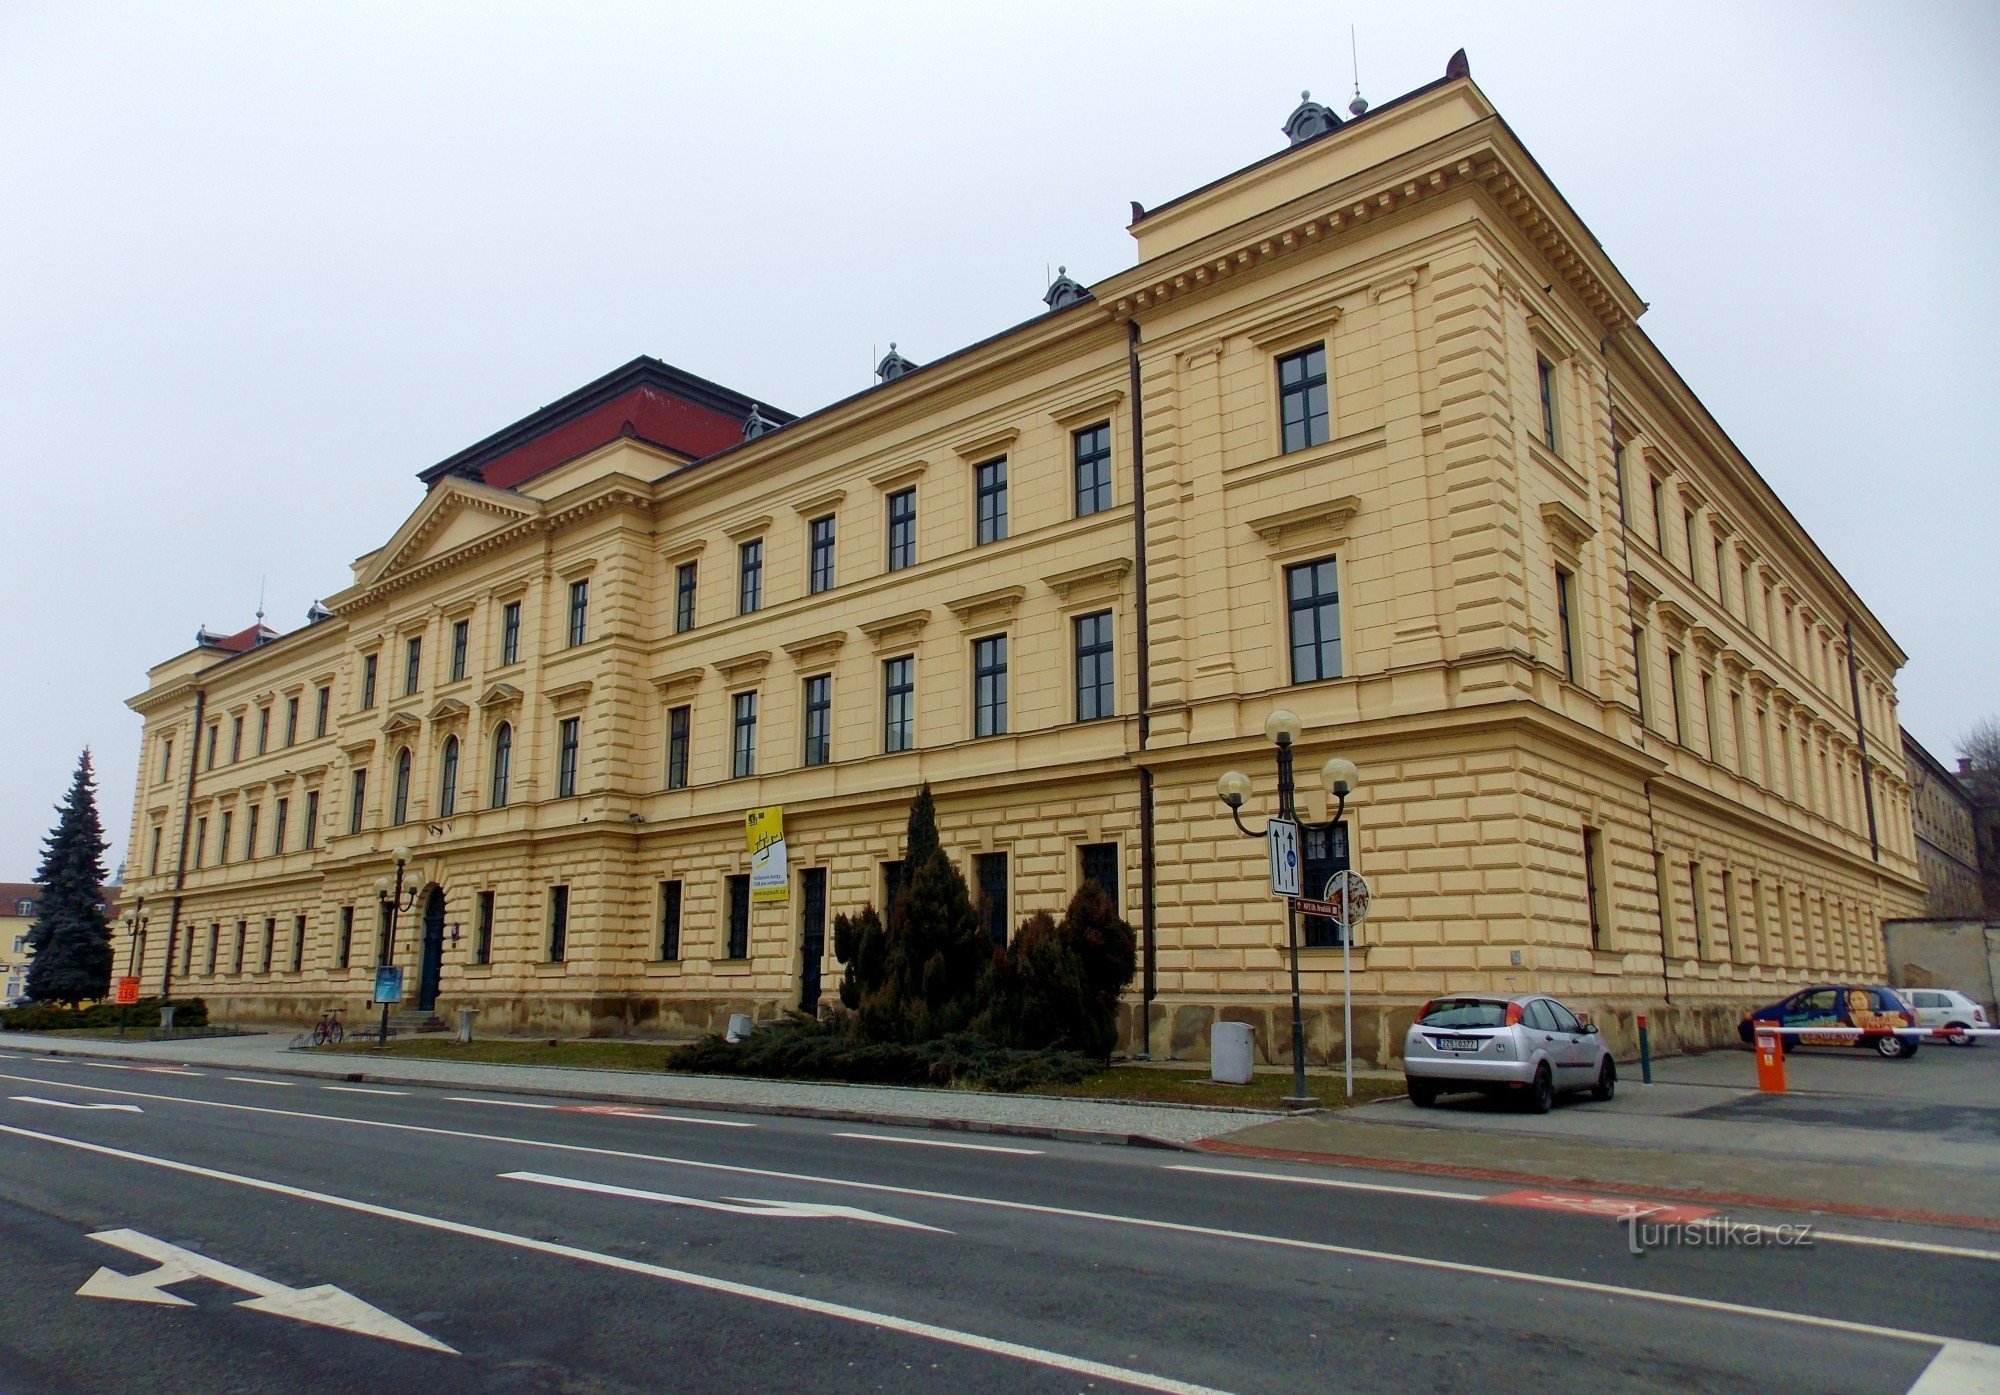 Palace of Justice - SPUŠ building